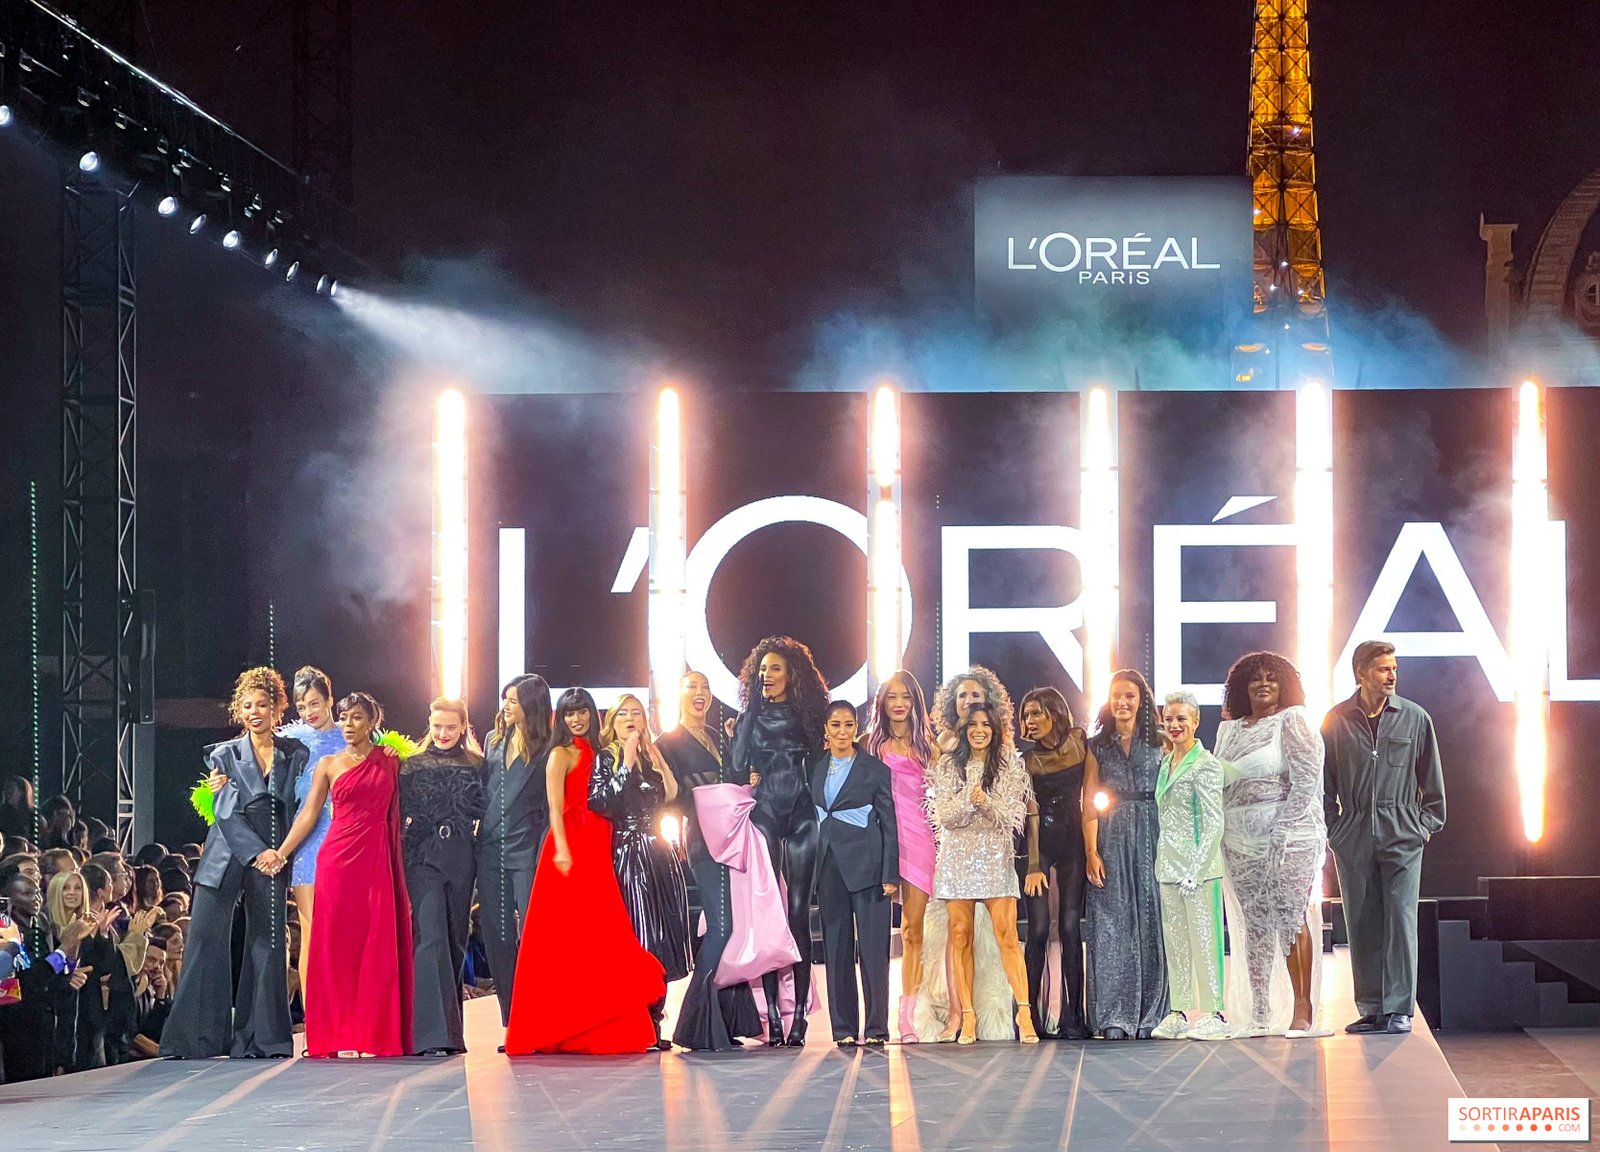 L'Oréal Paris Beauty Sponsor